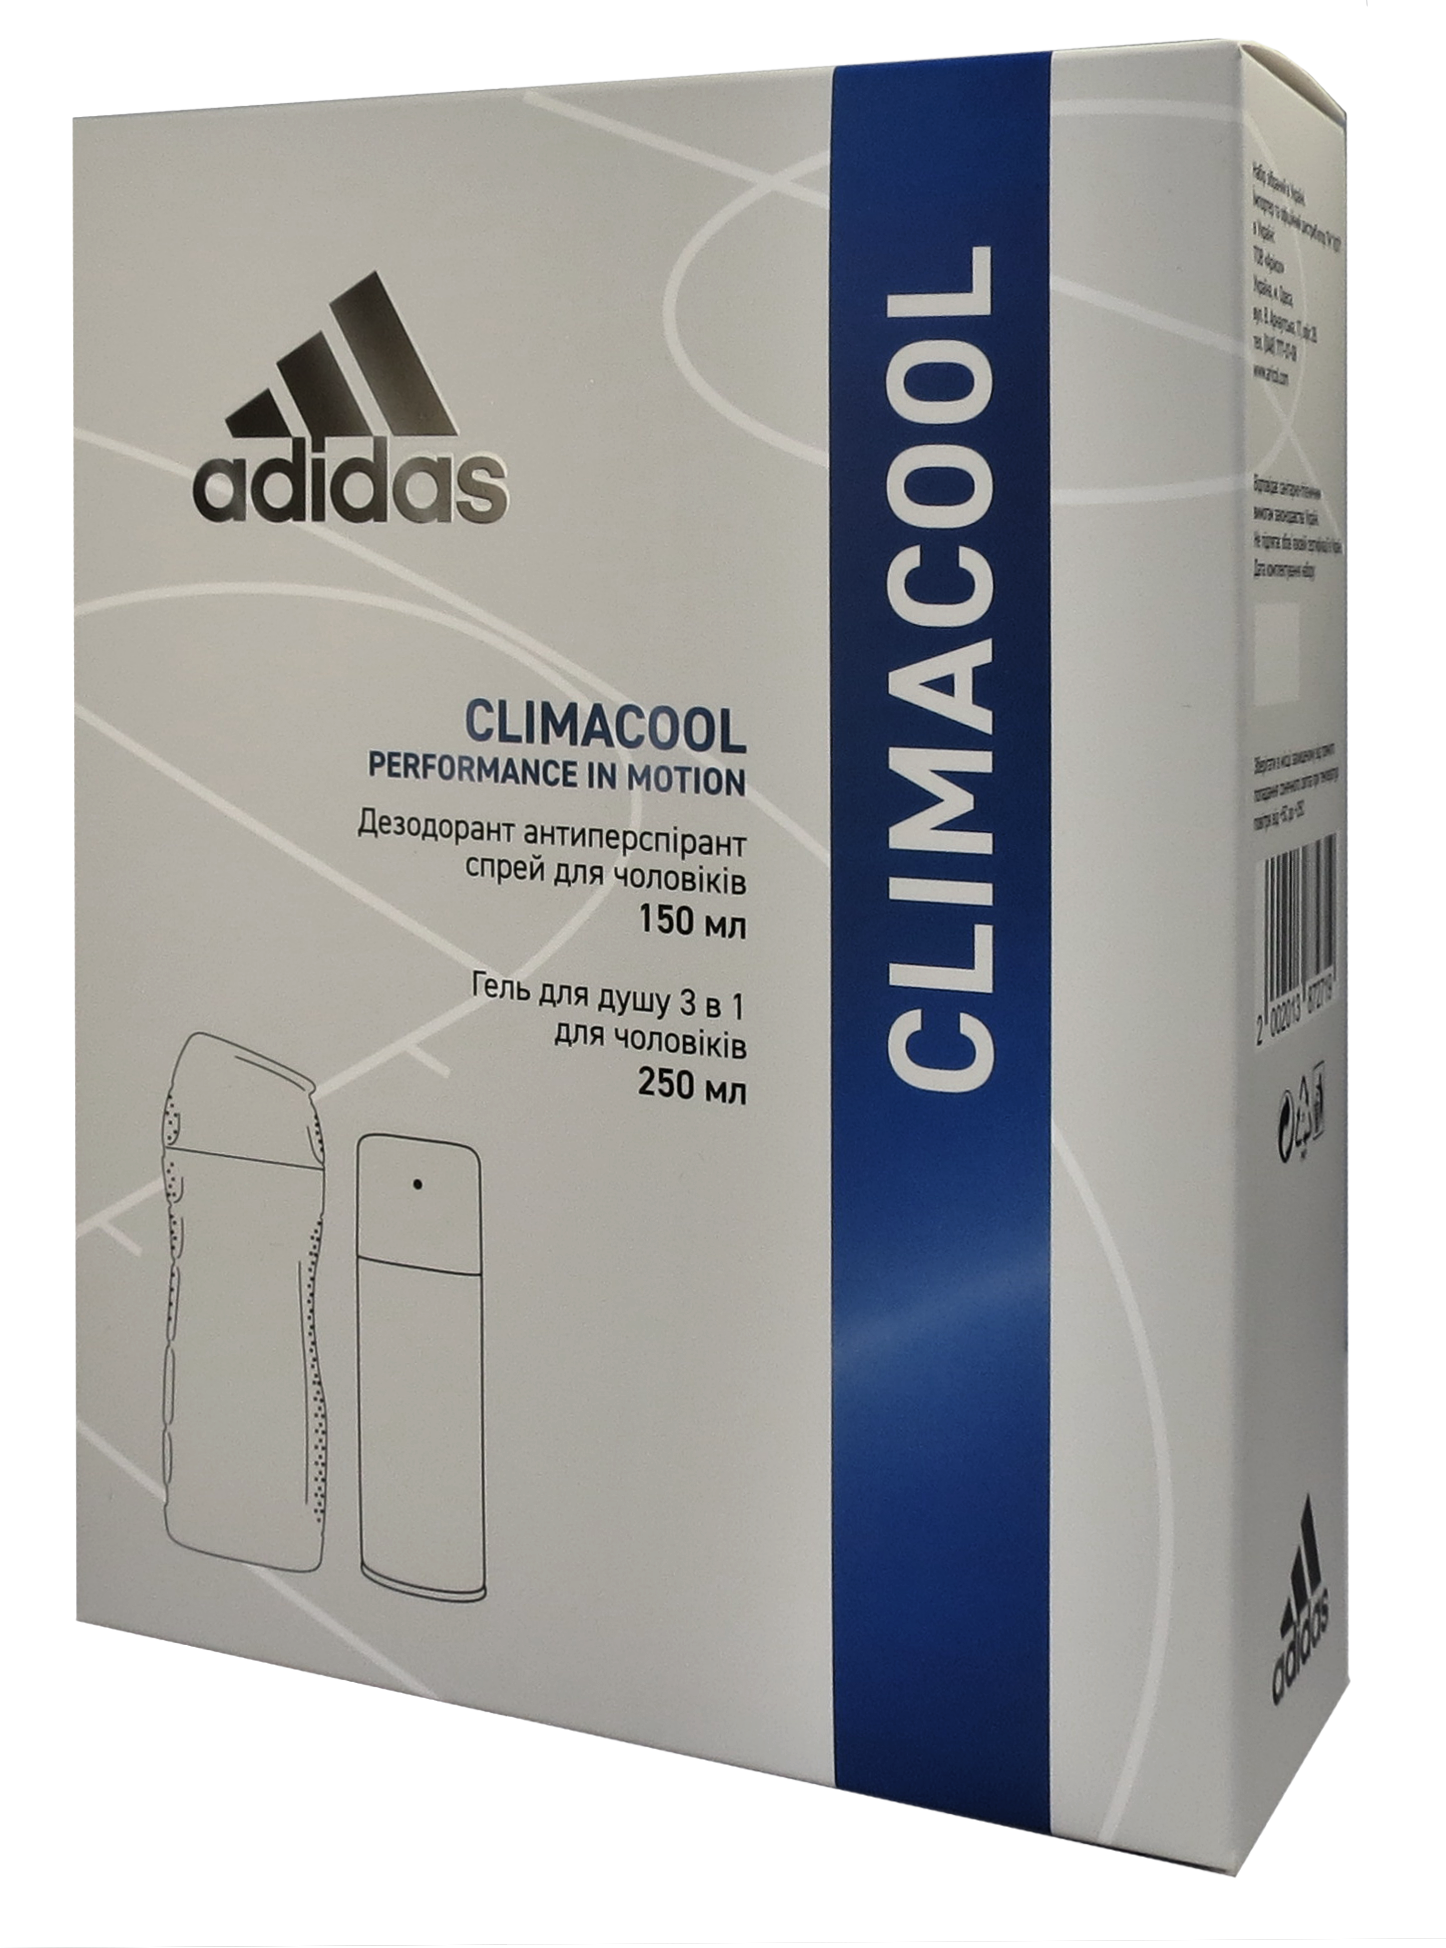 Набор для мужчин Adidas 2020 Дезодорант-антиперспирант Climacool 150 мл + Гель для душа 3in1 Body hair and face 250 мл - фото 2